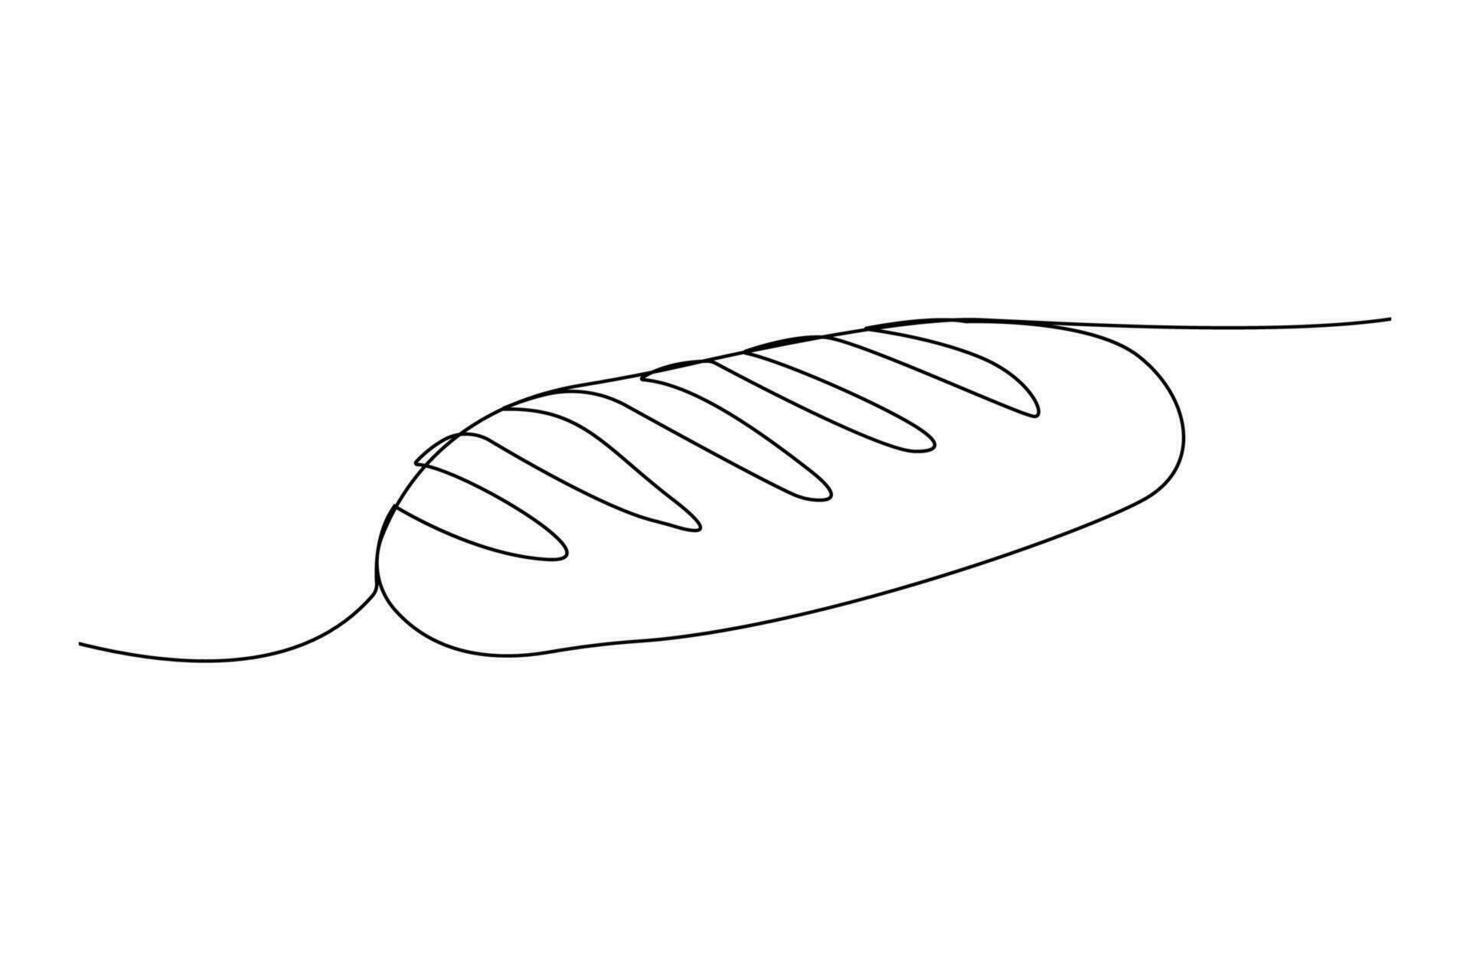 Single kontinuierlich Linie Zeichnung von ein Brot vektor